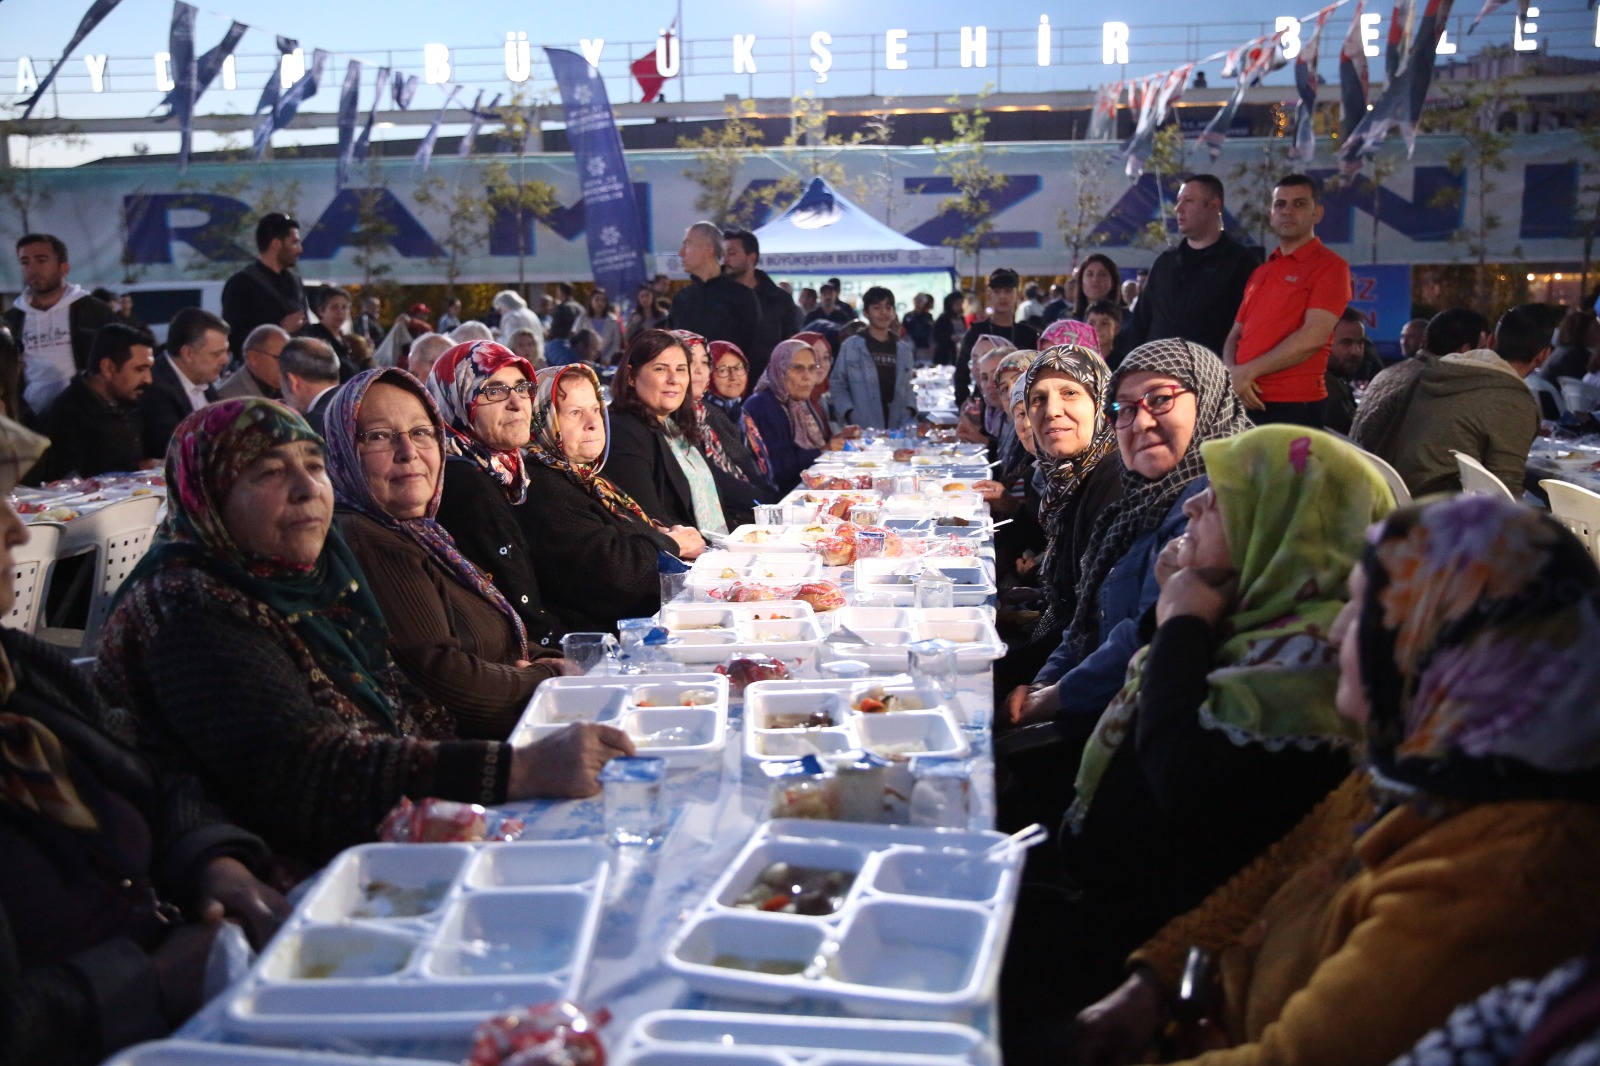 15 bin kişi Büyükşehir’in iftar sofralarında buluştu